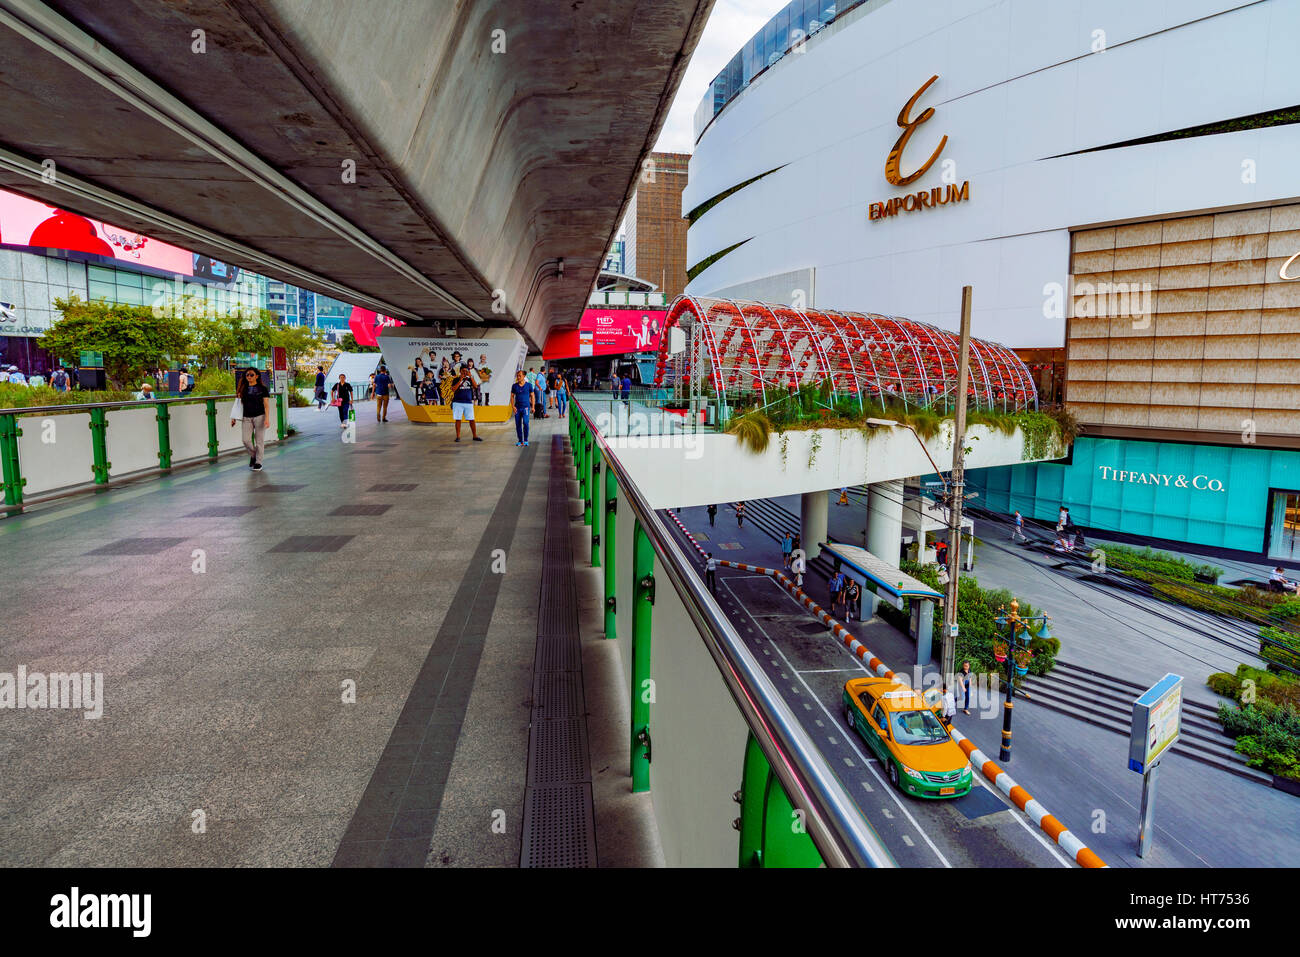 BANGKOK, Tailandia - 03 febbraio: questa è vista dell'ingresso del Emporium Shopping Mall e da un cavalcavia che portano ad altri centri commerciali di lusso in downt Foto Stock